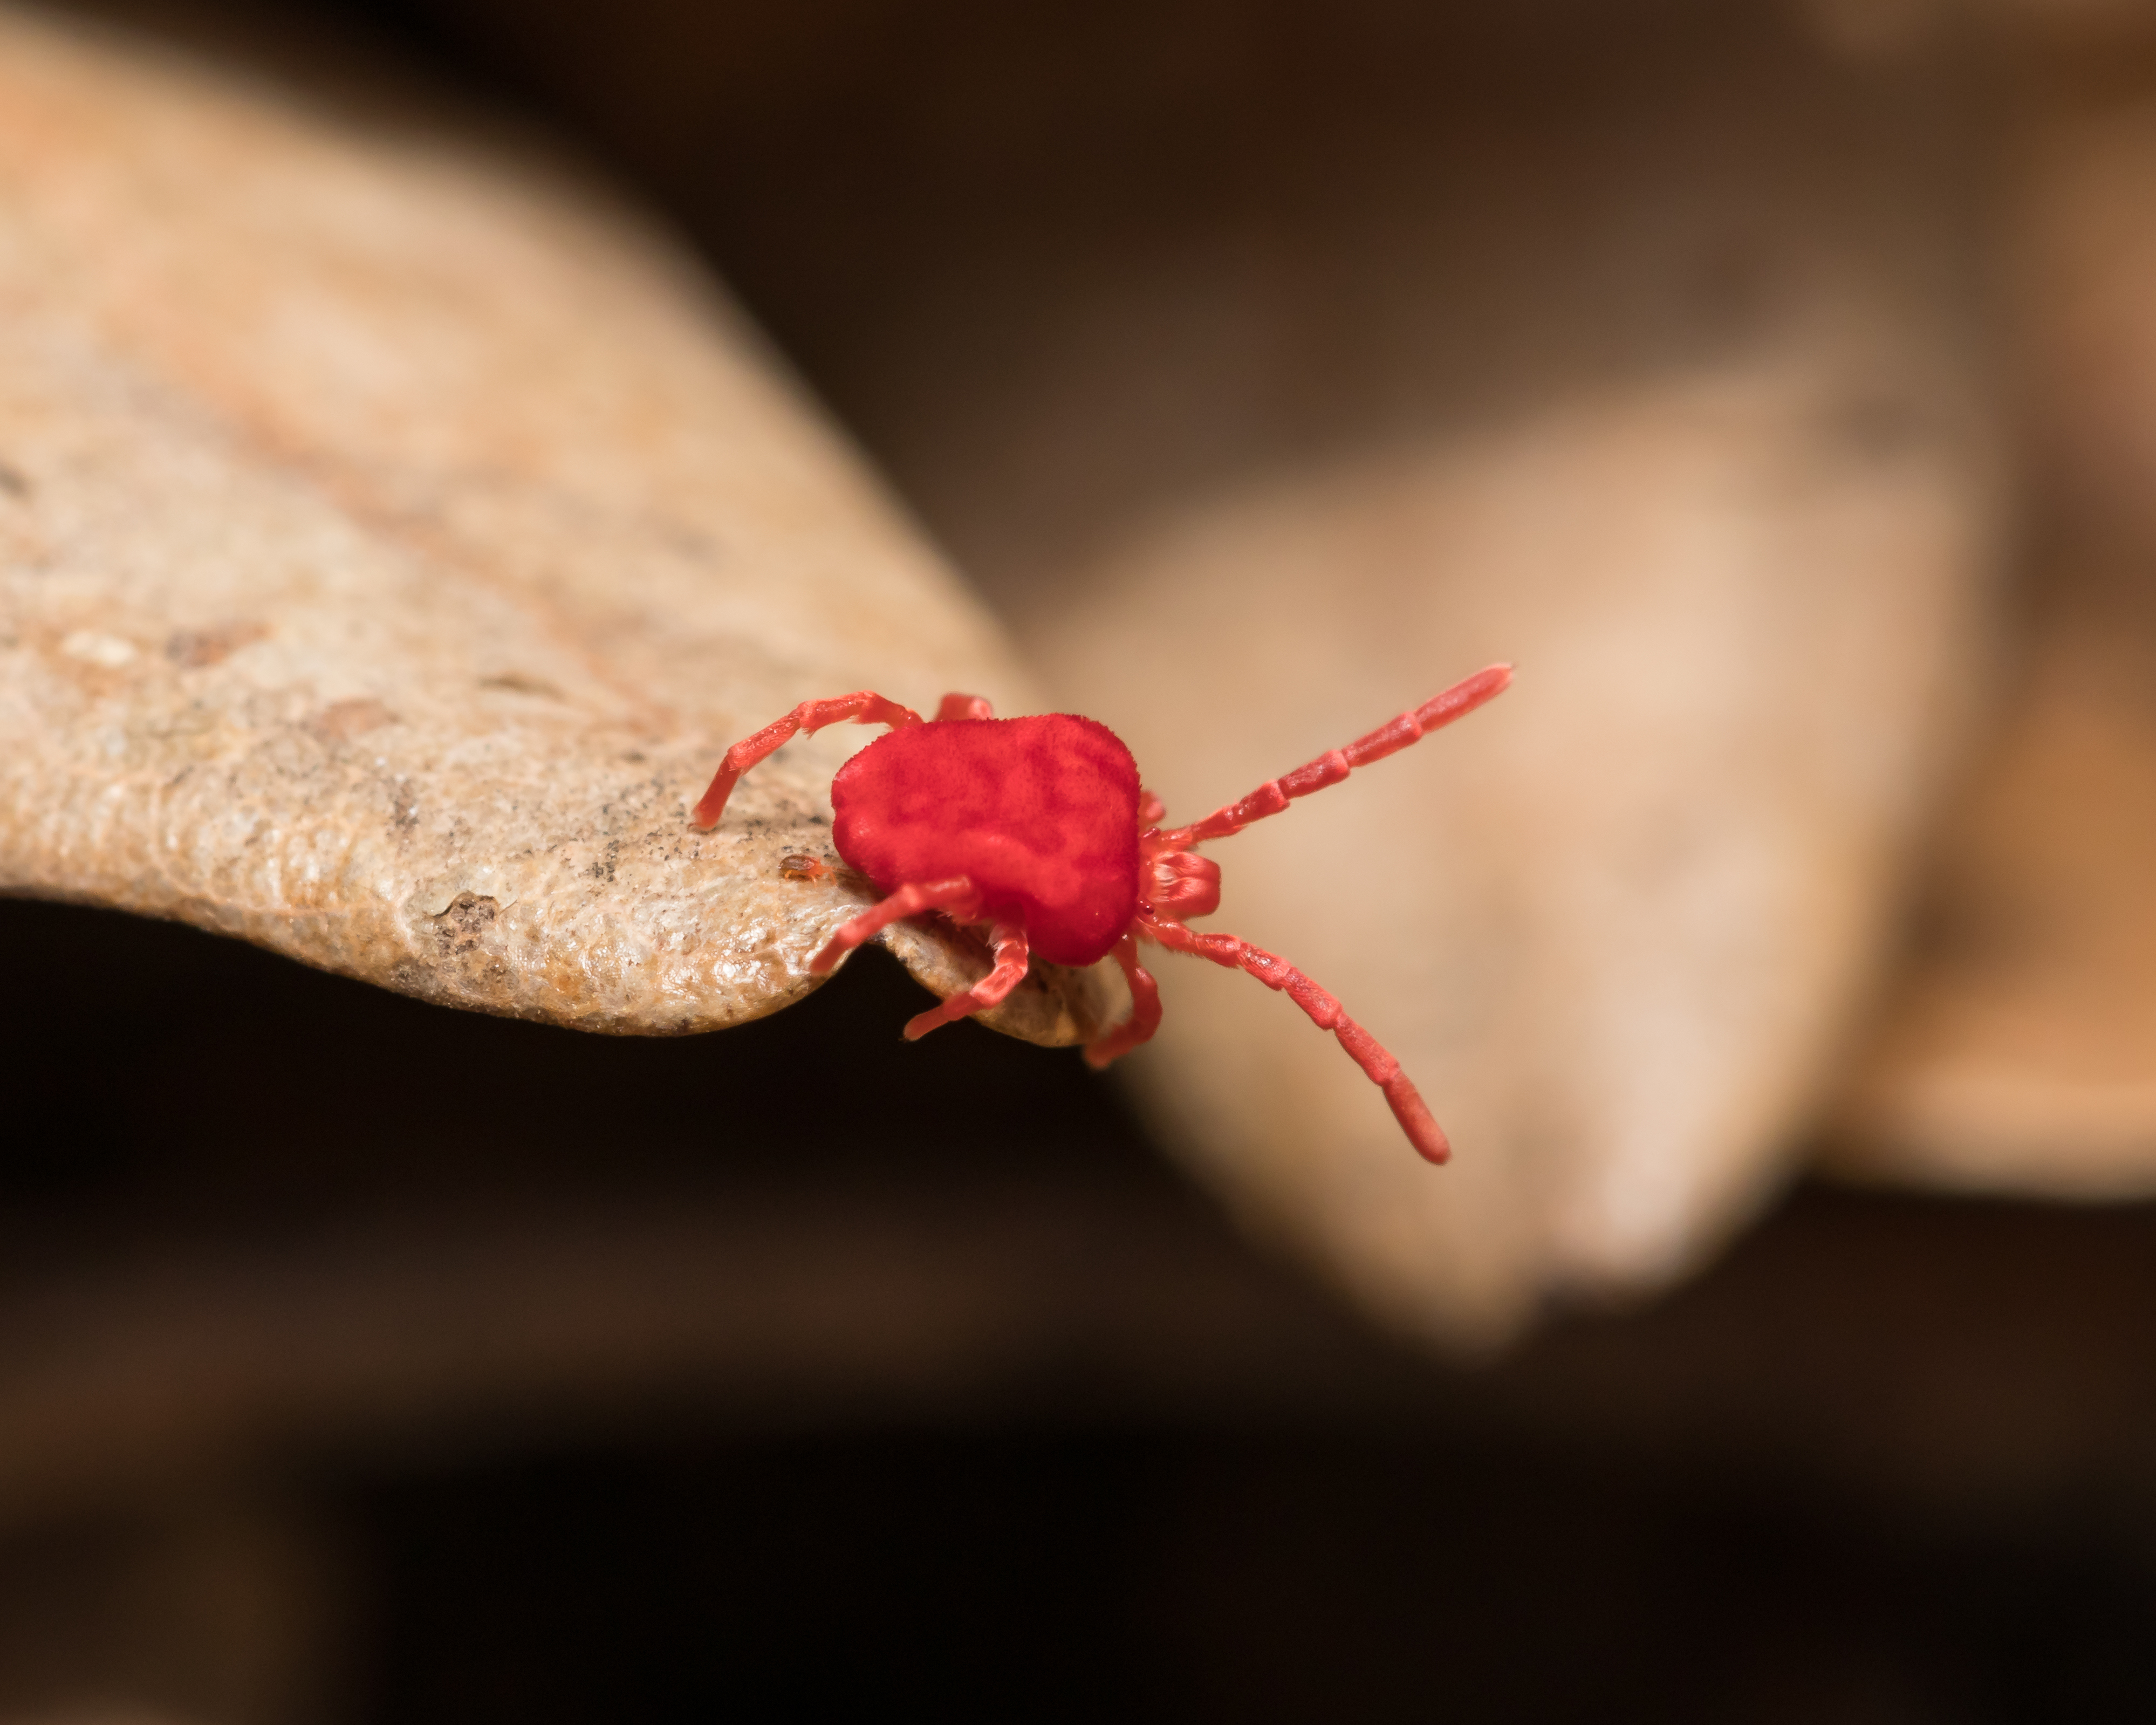 red spider mites on concrete